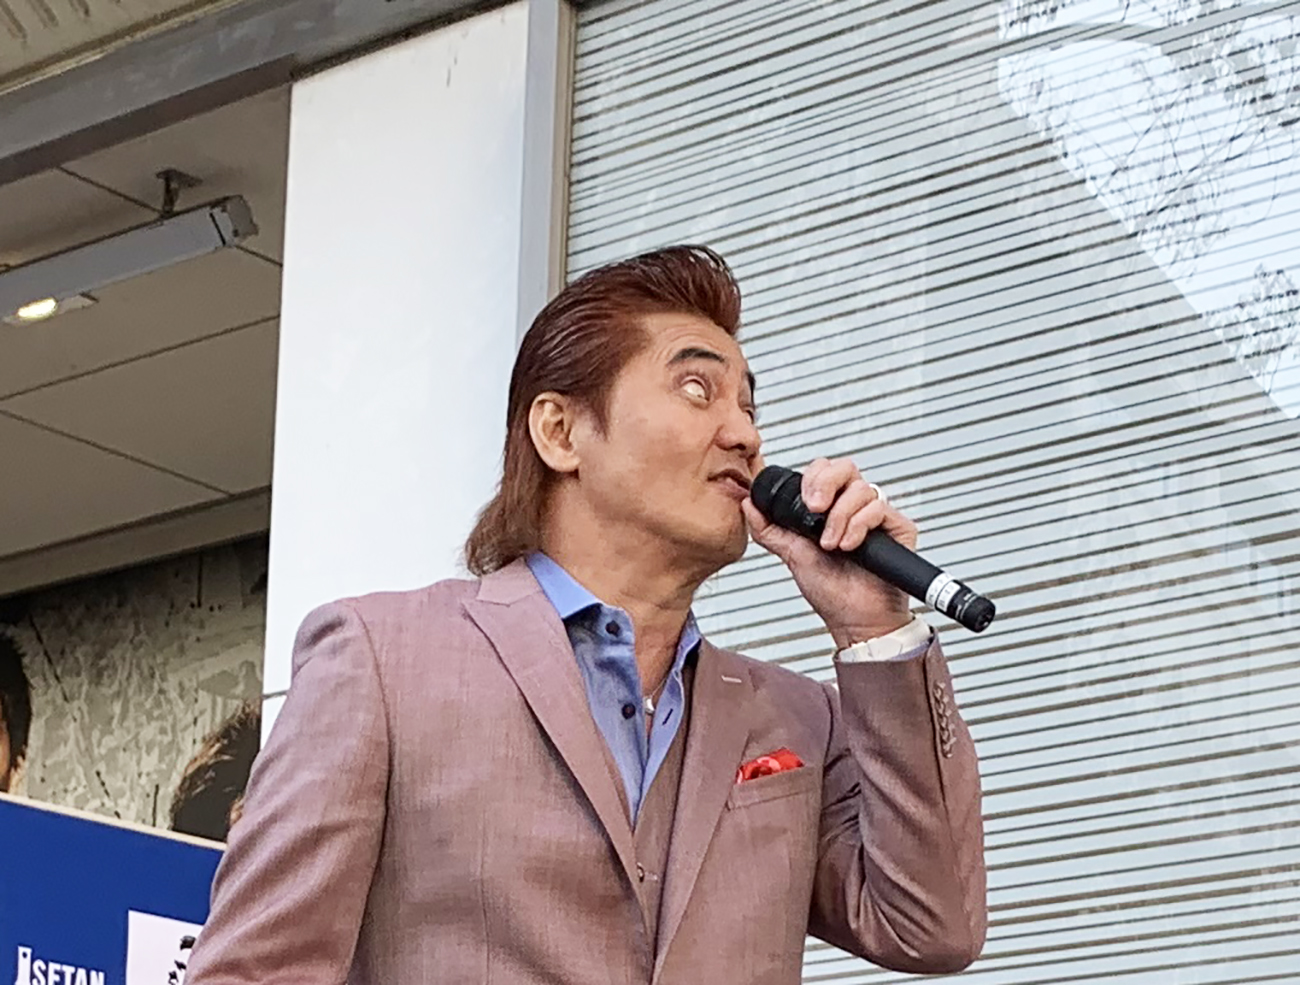 潜入 竹内力さんが伊勢丹で店頭販売する 力祭 に行ってみた結果 狂乱の宴だった ロケットニュース24